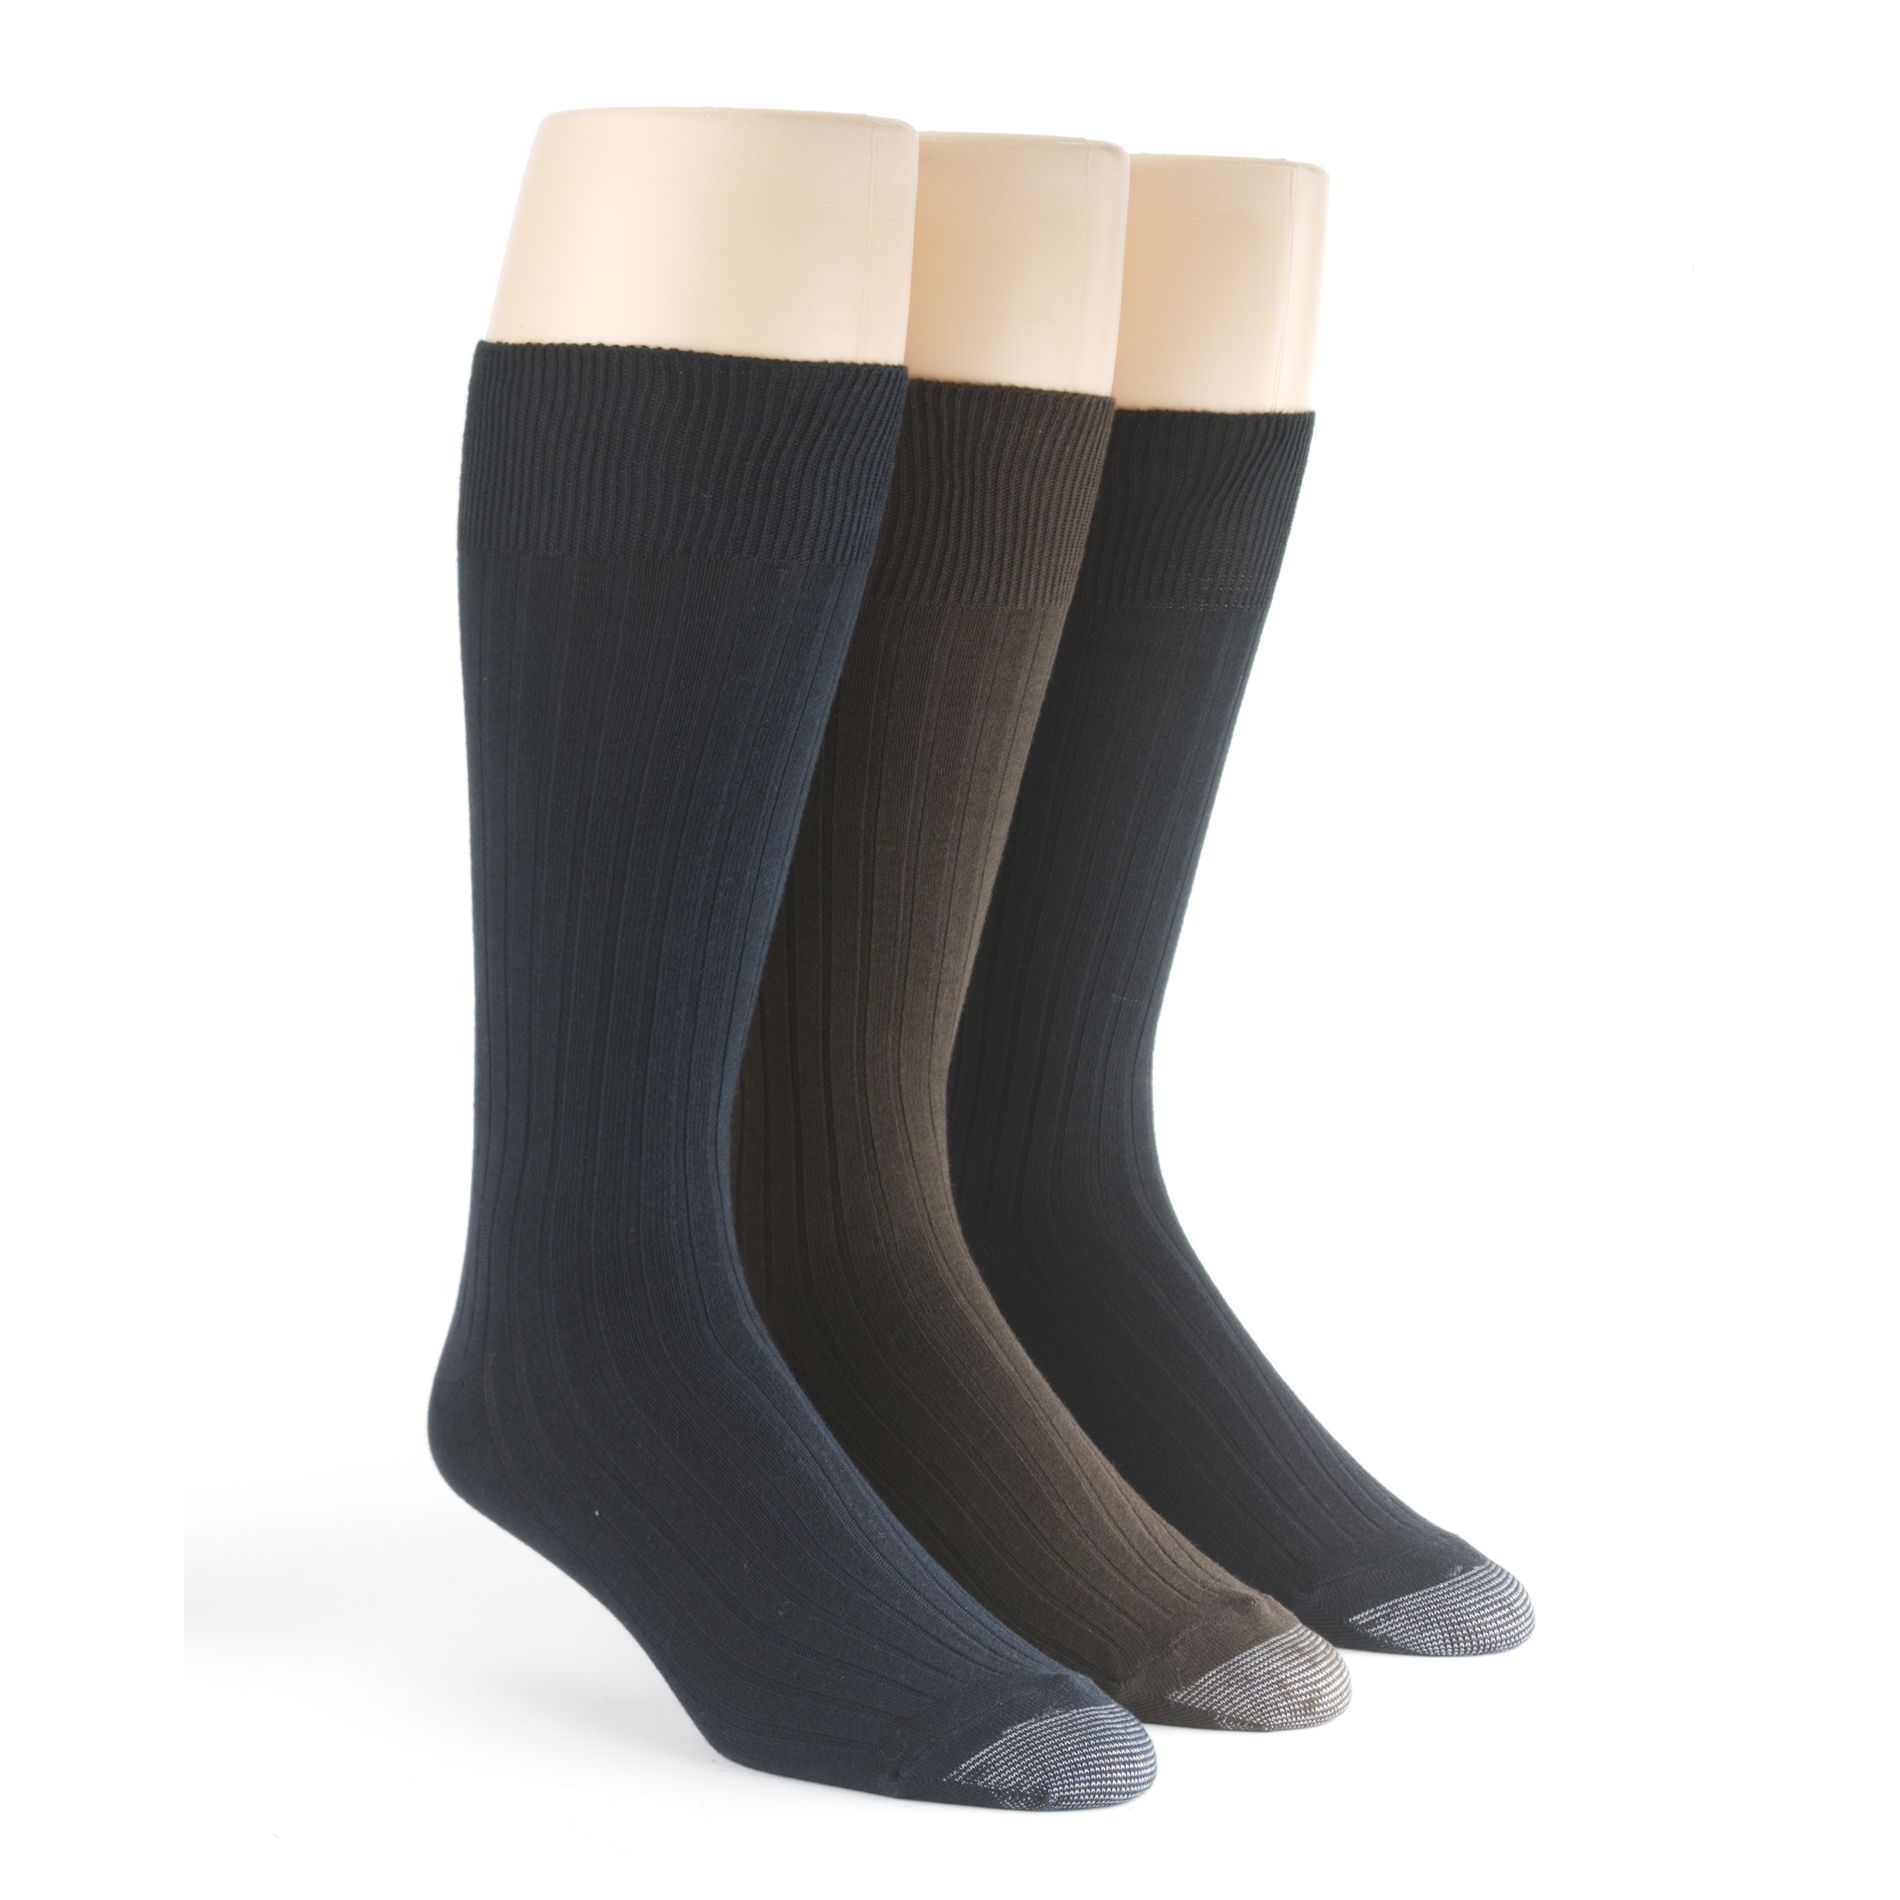 Silvertoe Cotton Dress Socks - 3 Pack